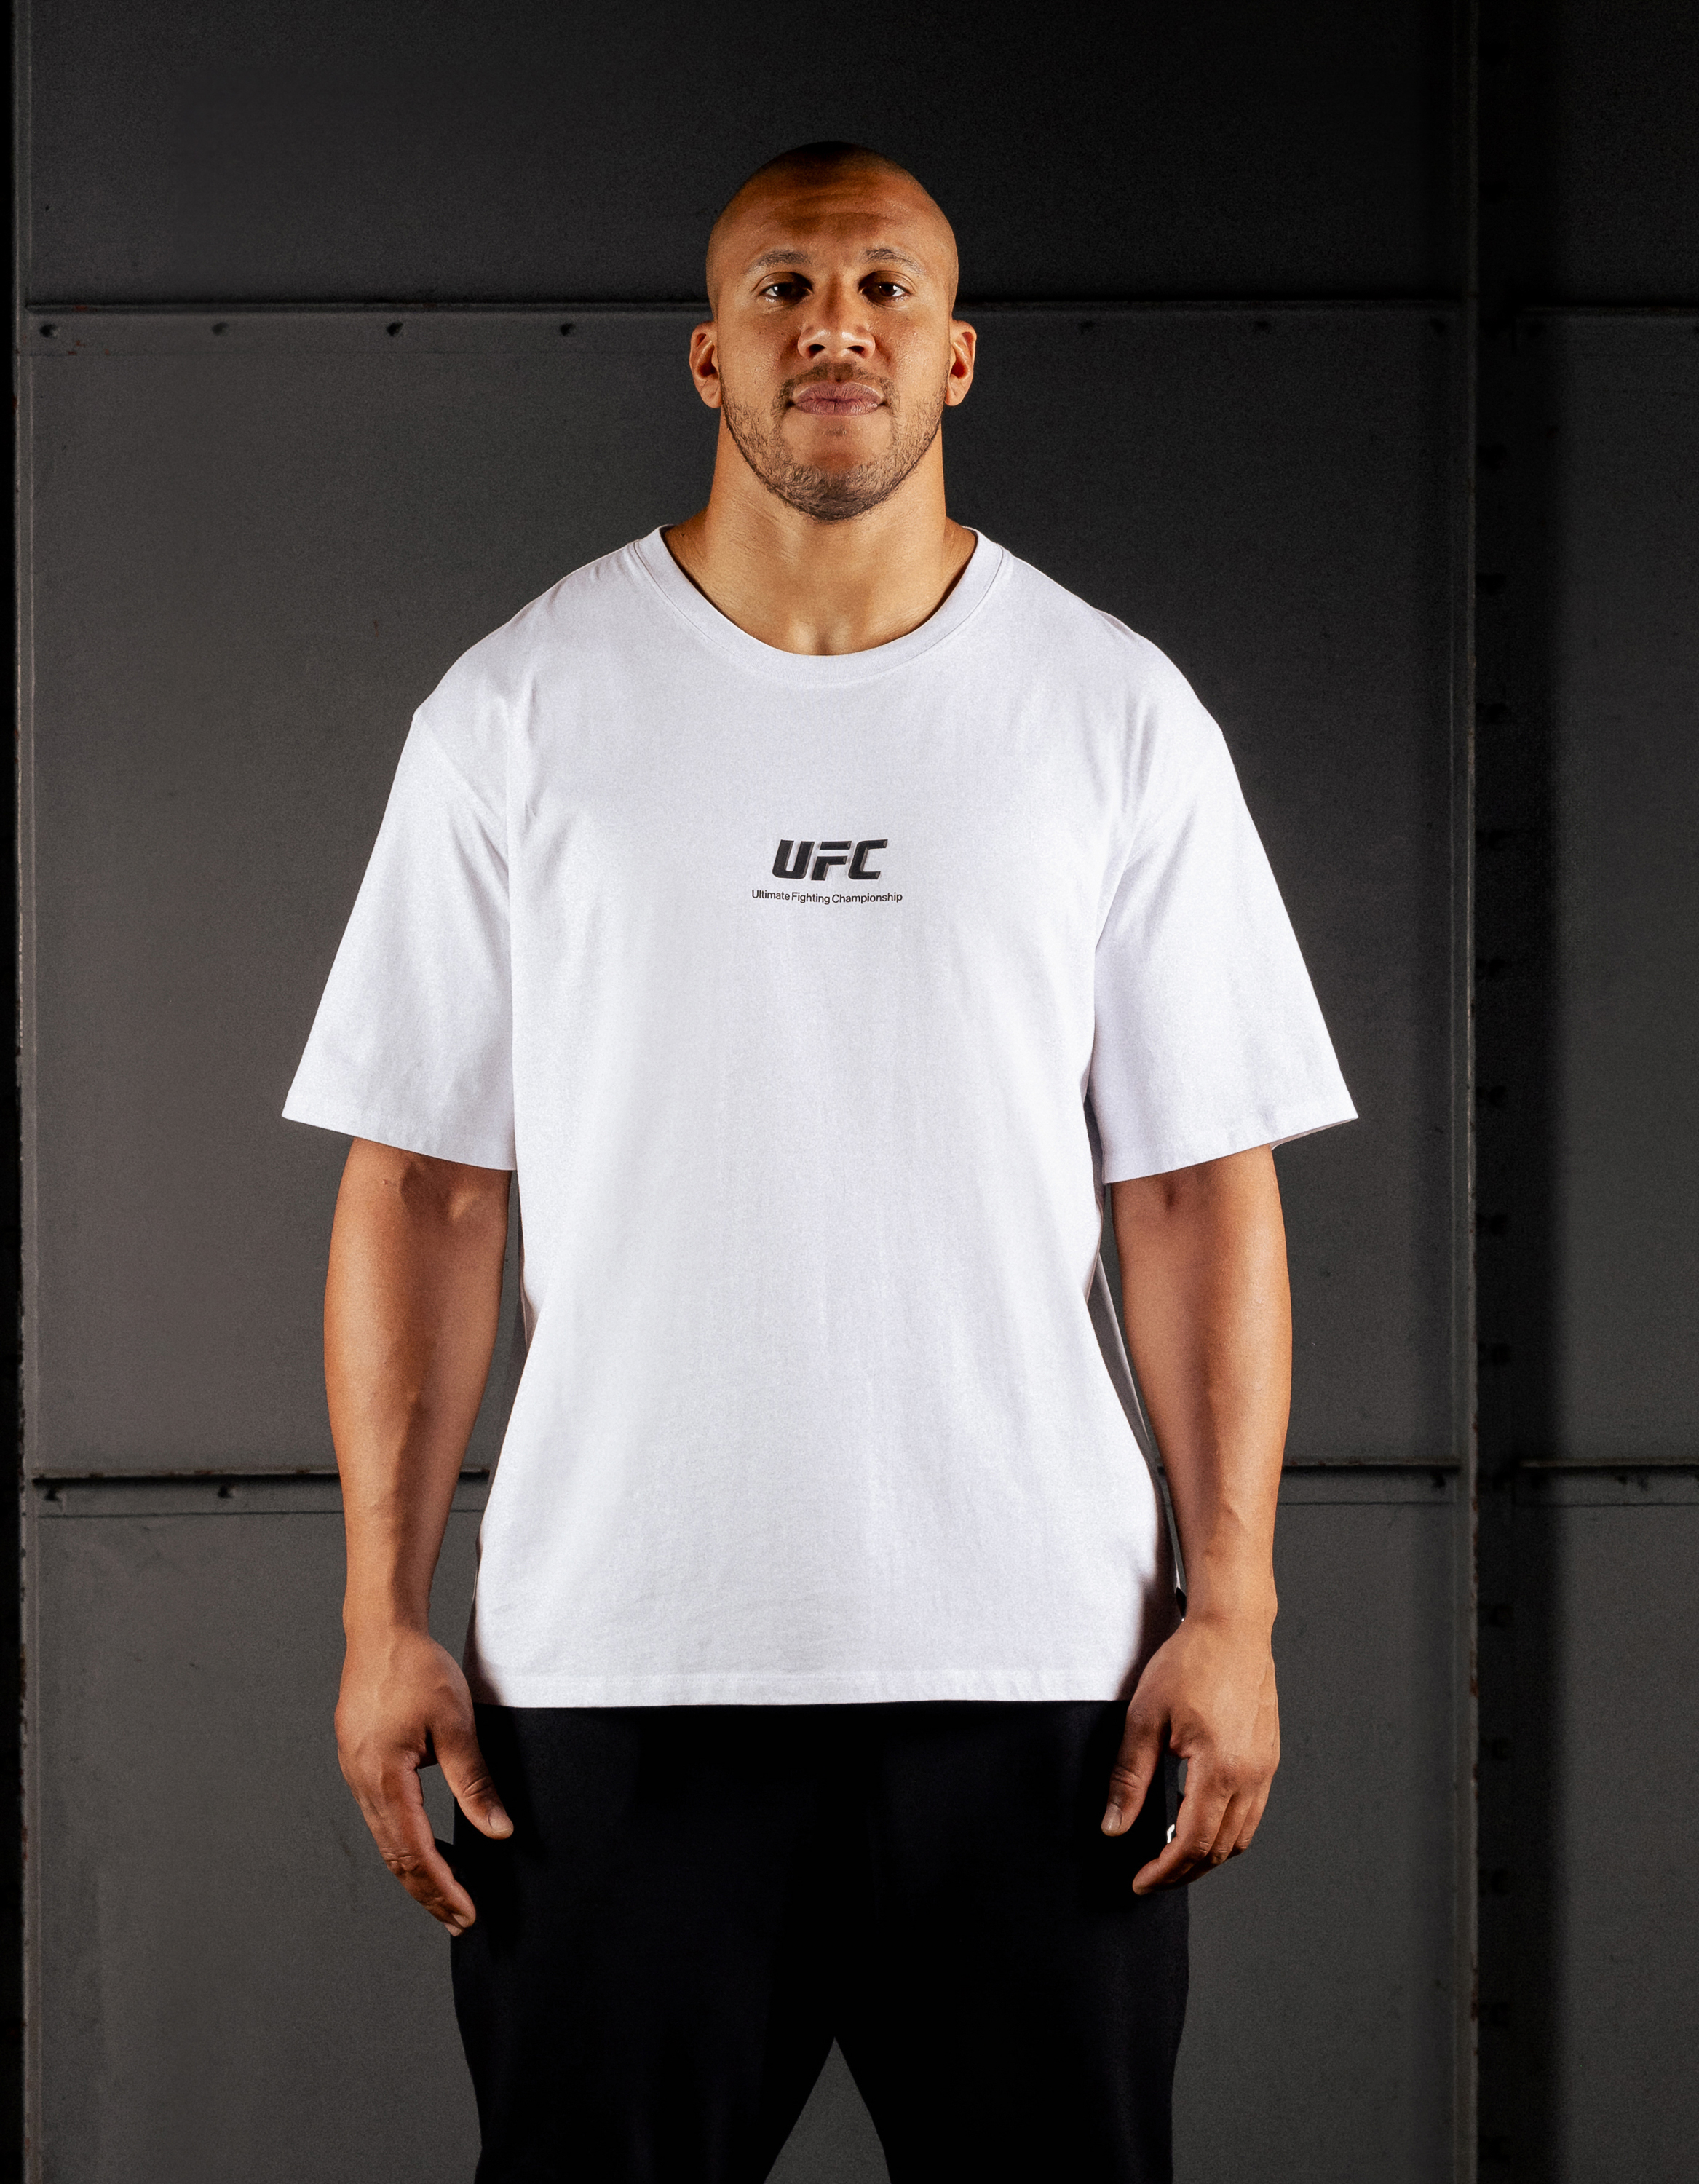 Celio Printed T-Shirt UFC - Men